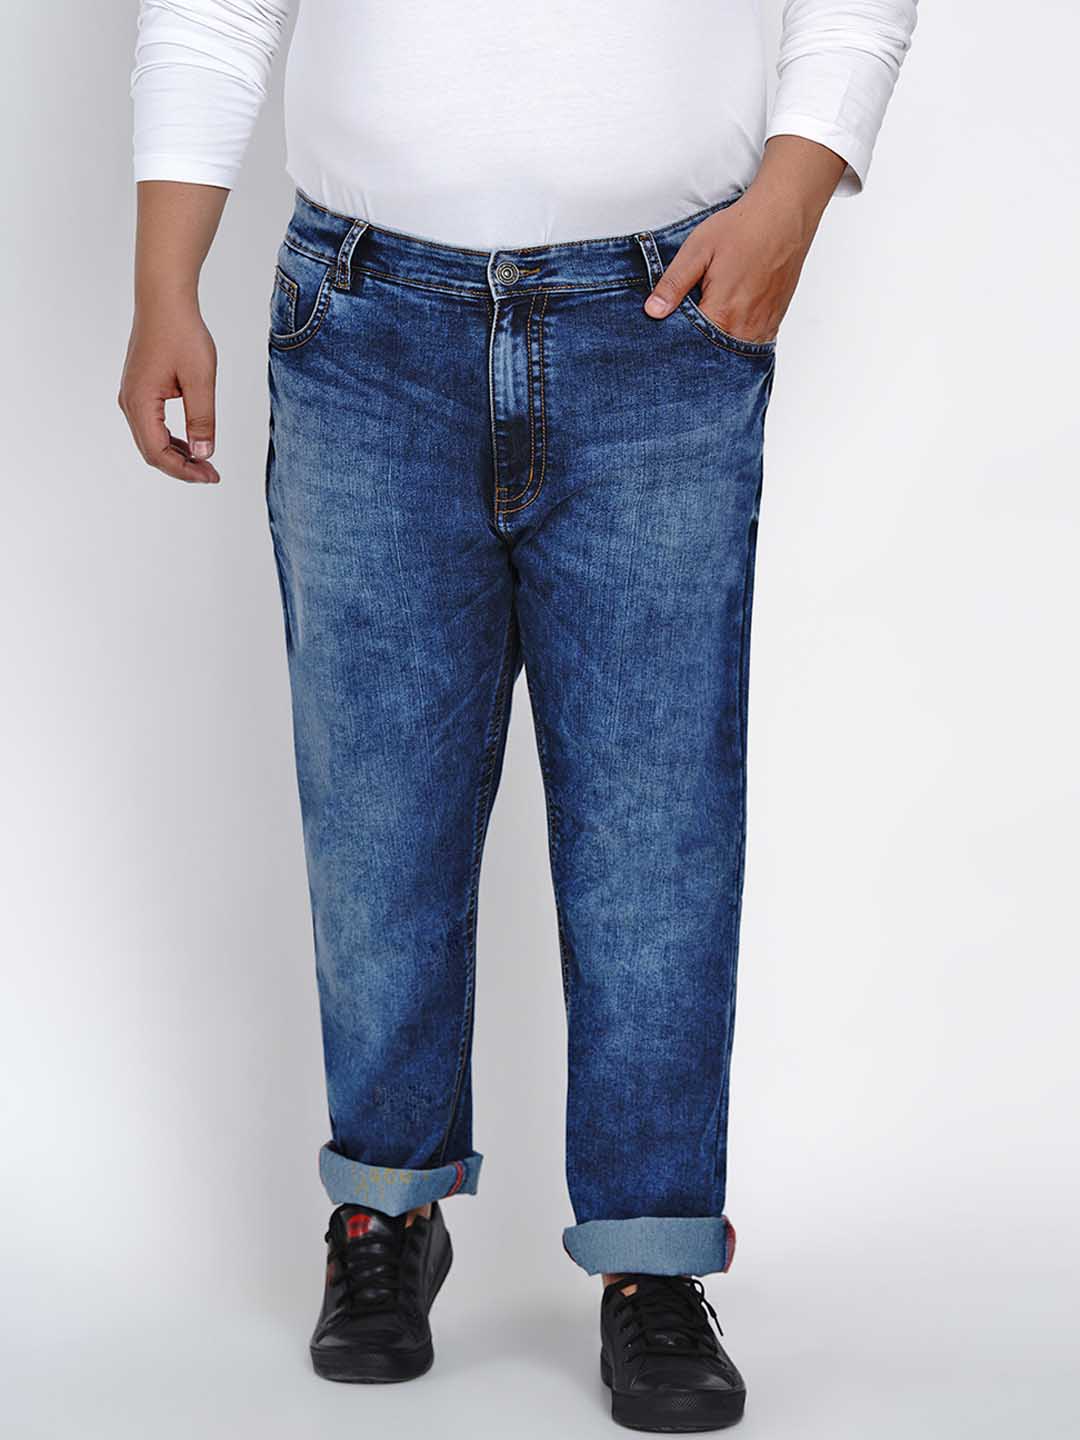 affordables/jeans/JPJ2521/jpj2521-2.jpg